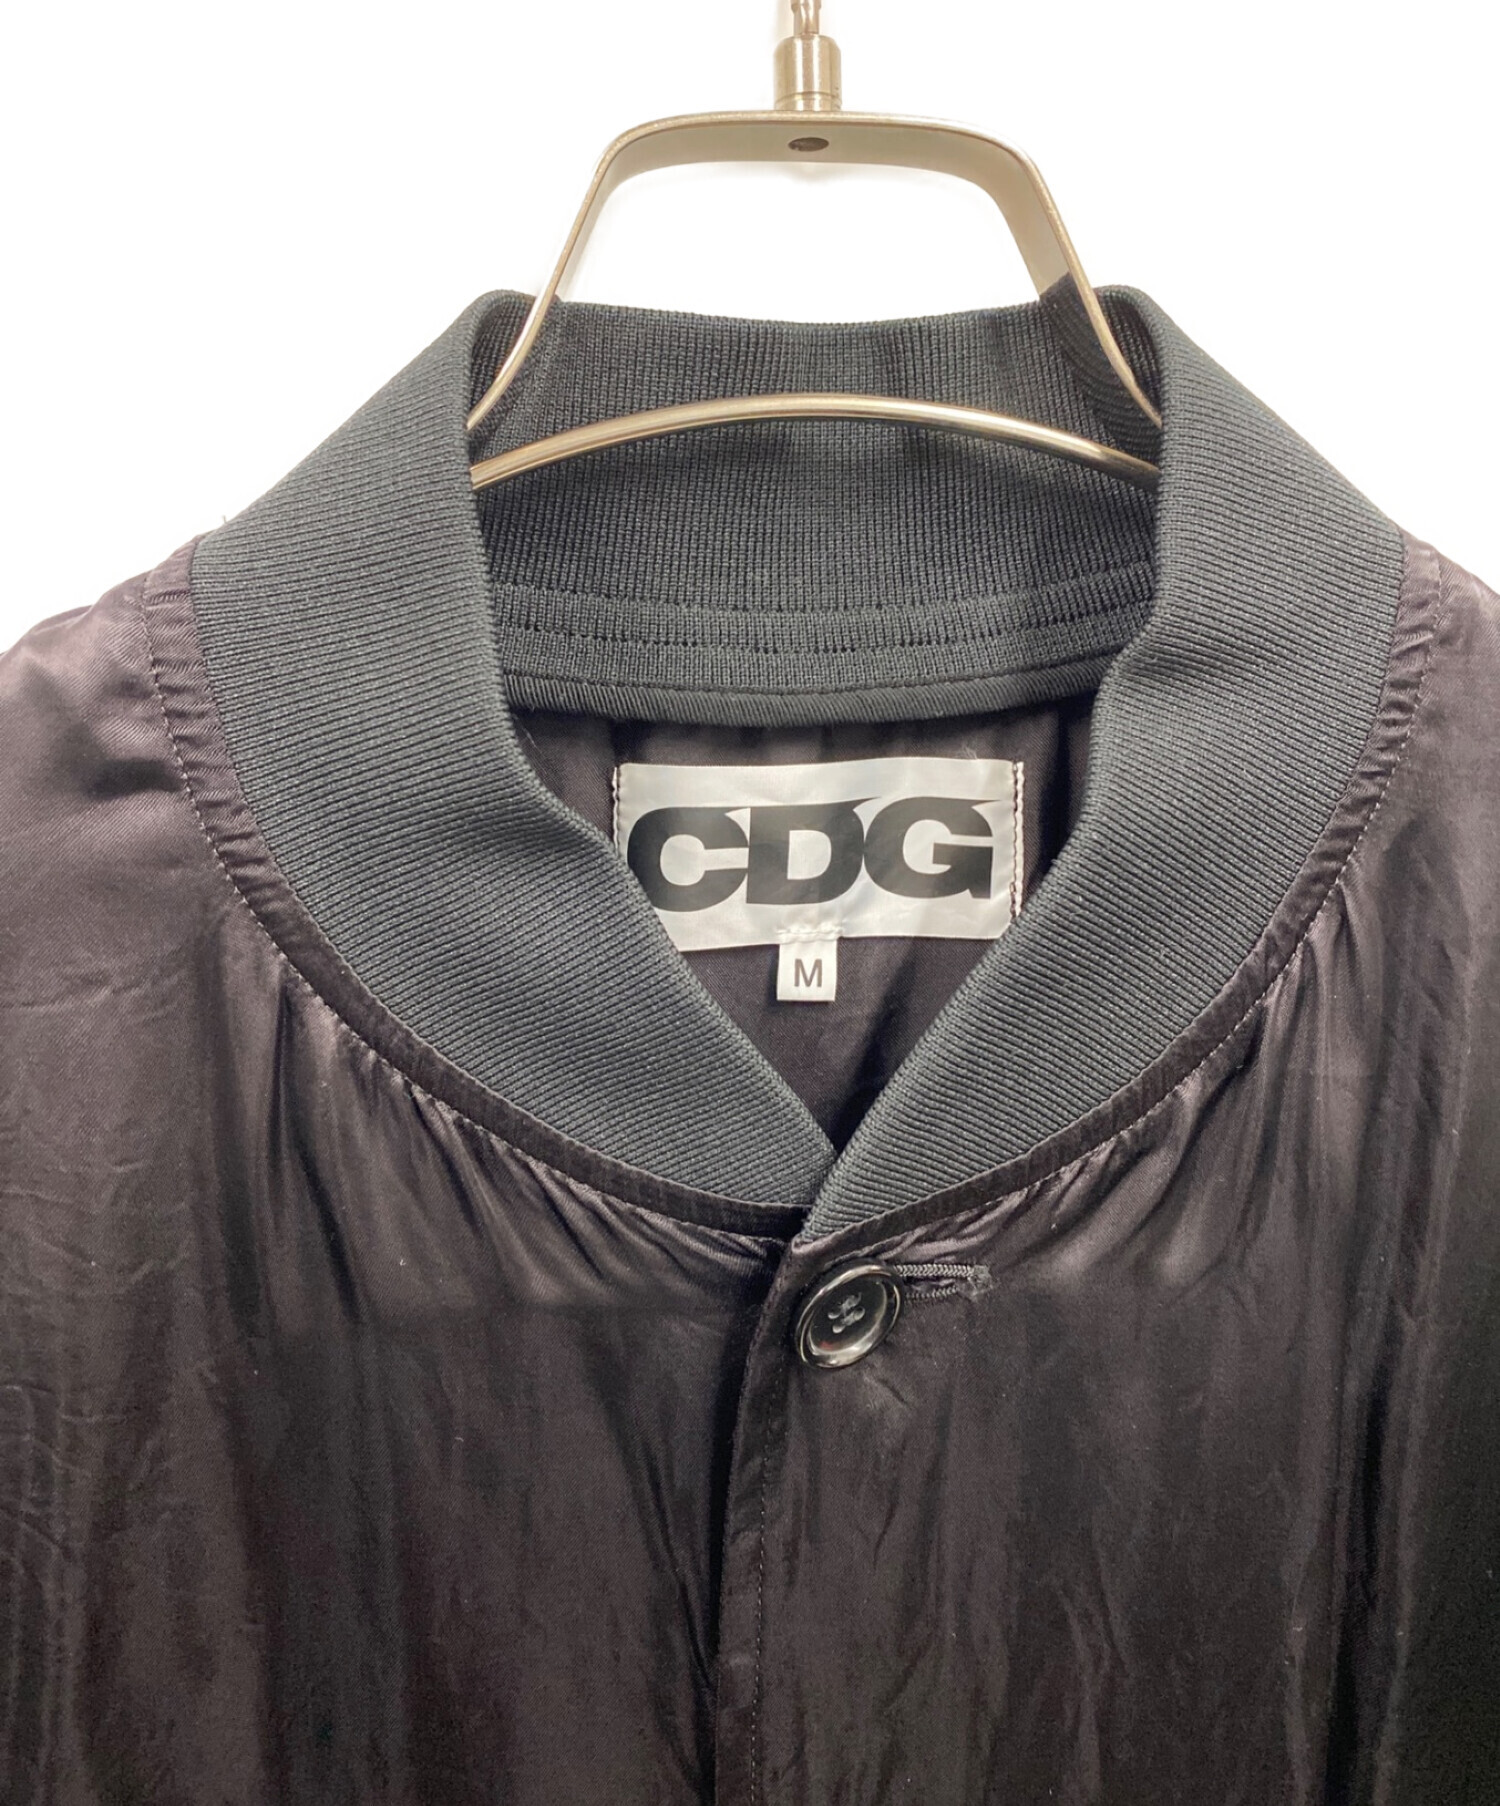 CDG (シーディージー) スタッフコート ブラック サイズ:M